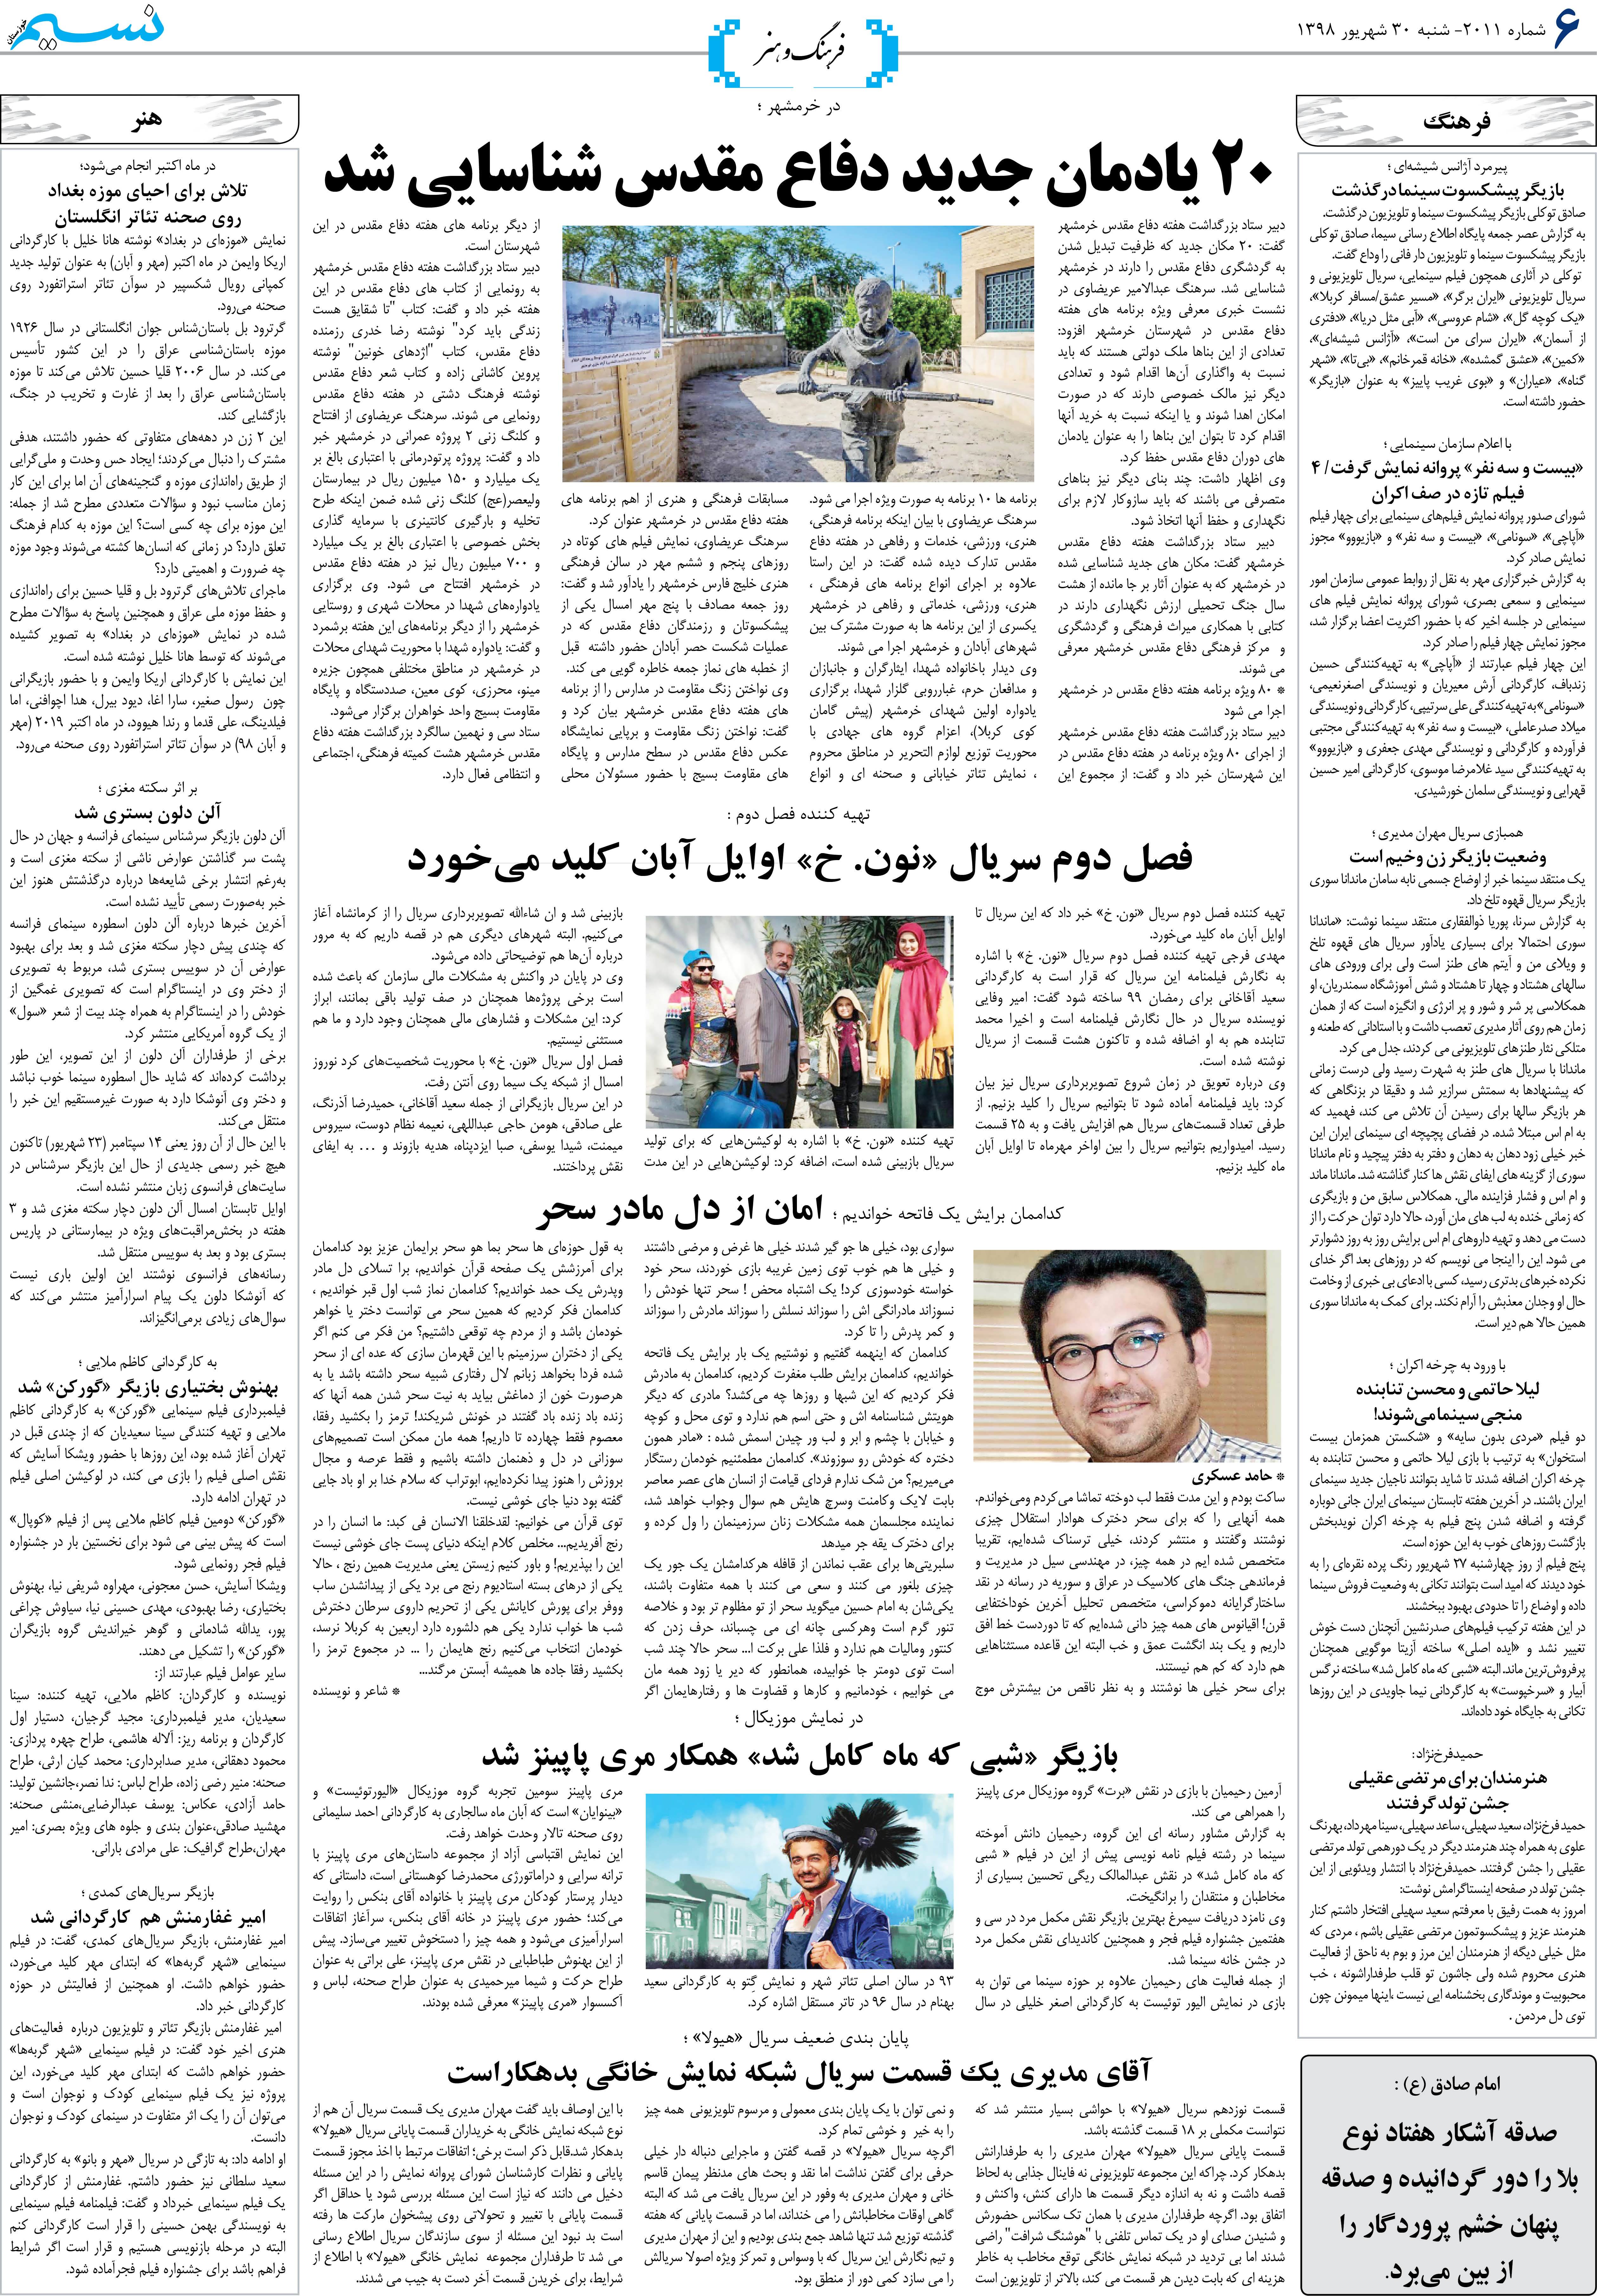 صفحه فرهنگ و هنر روزنامه نسیم شماره 2011